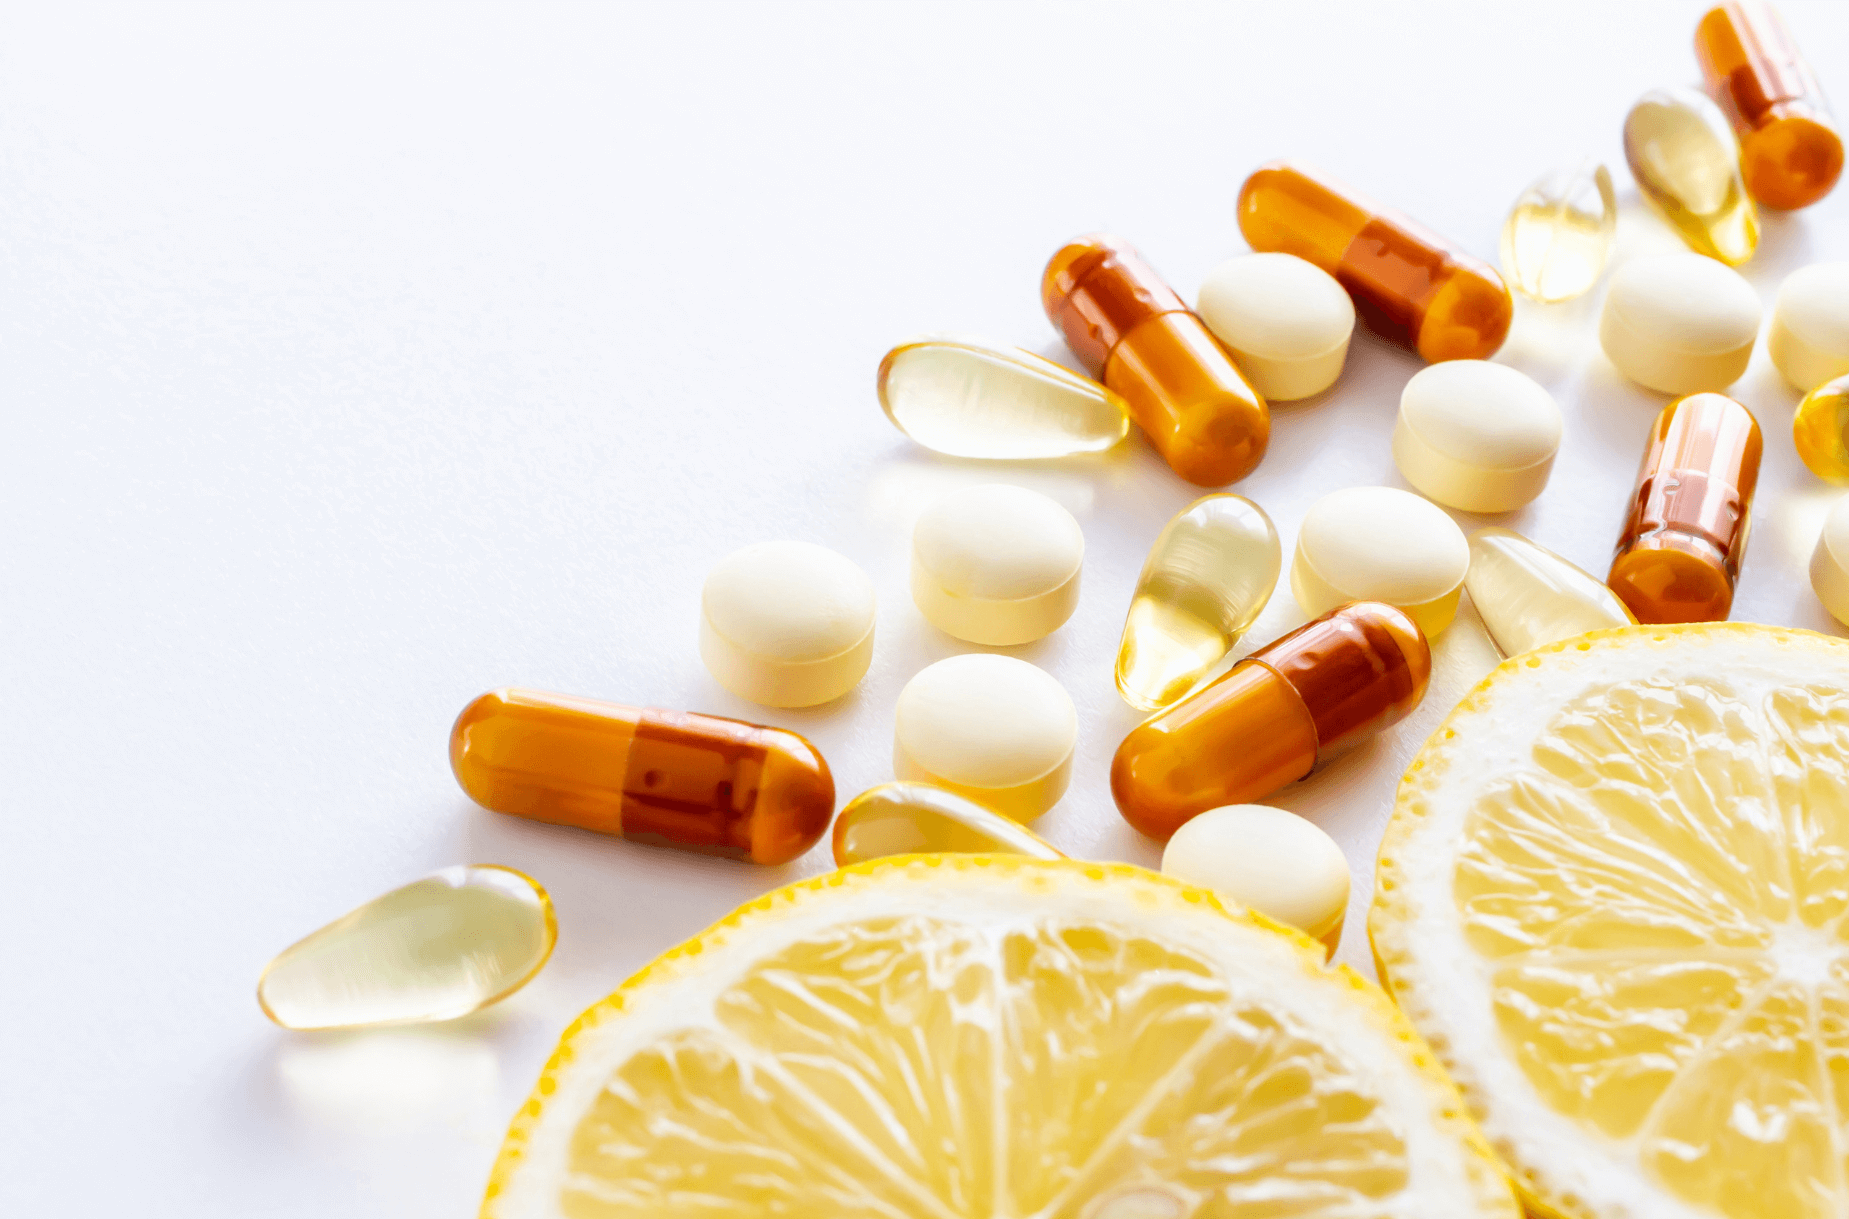 Mythos Antioxidantien: Warum Antioxidantien uns NICHT langsamer altern lassen